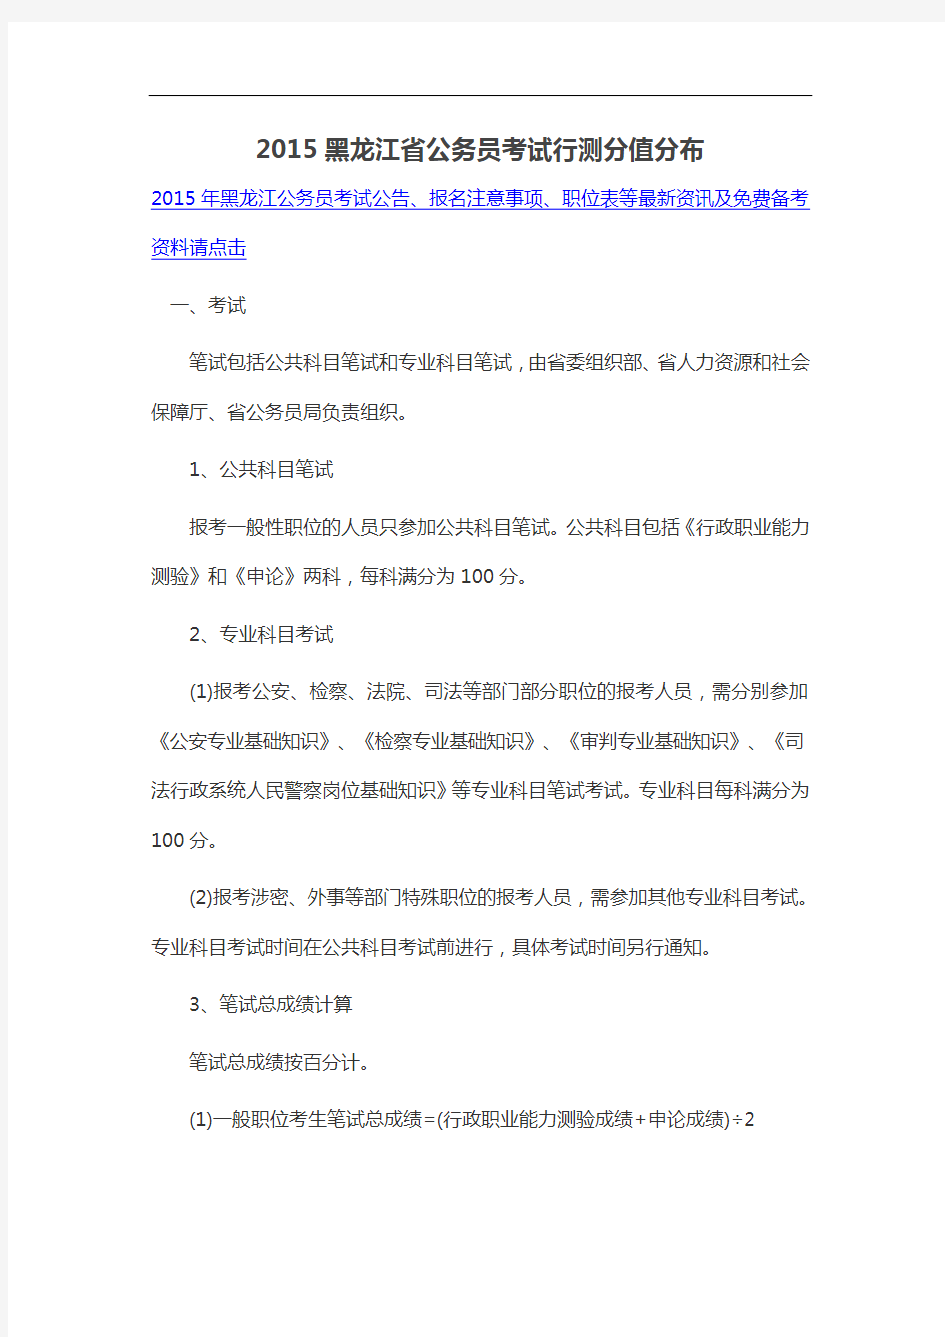 黑龙江省公务员考试行测分值分布